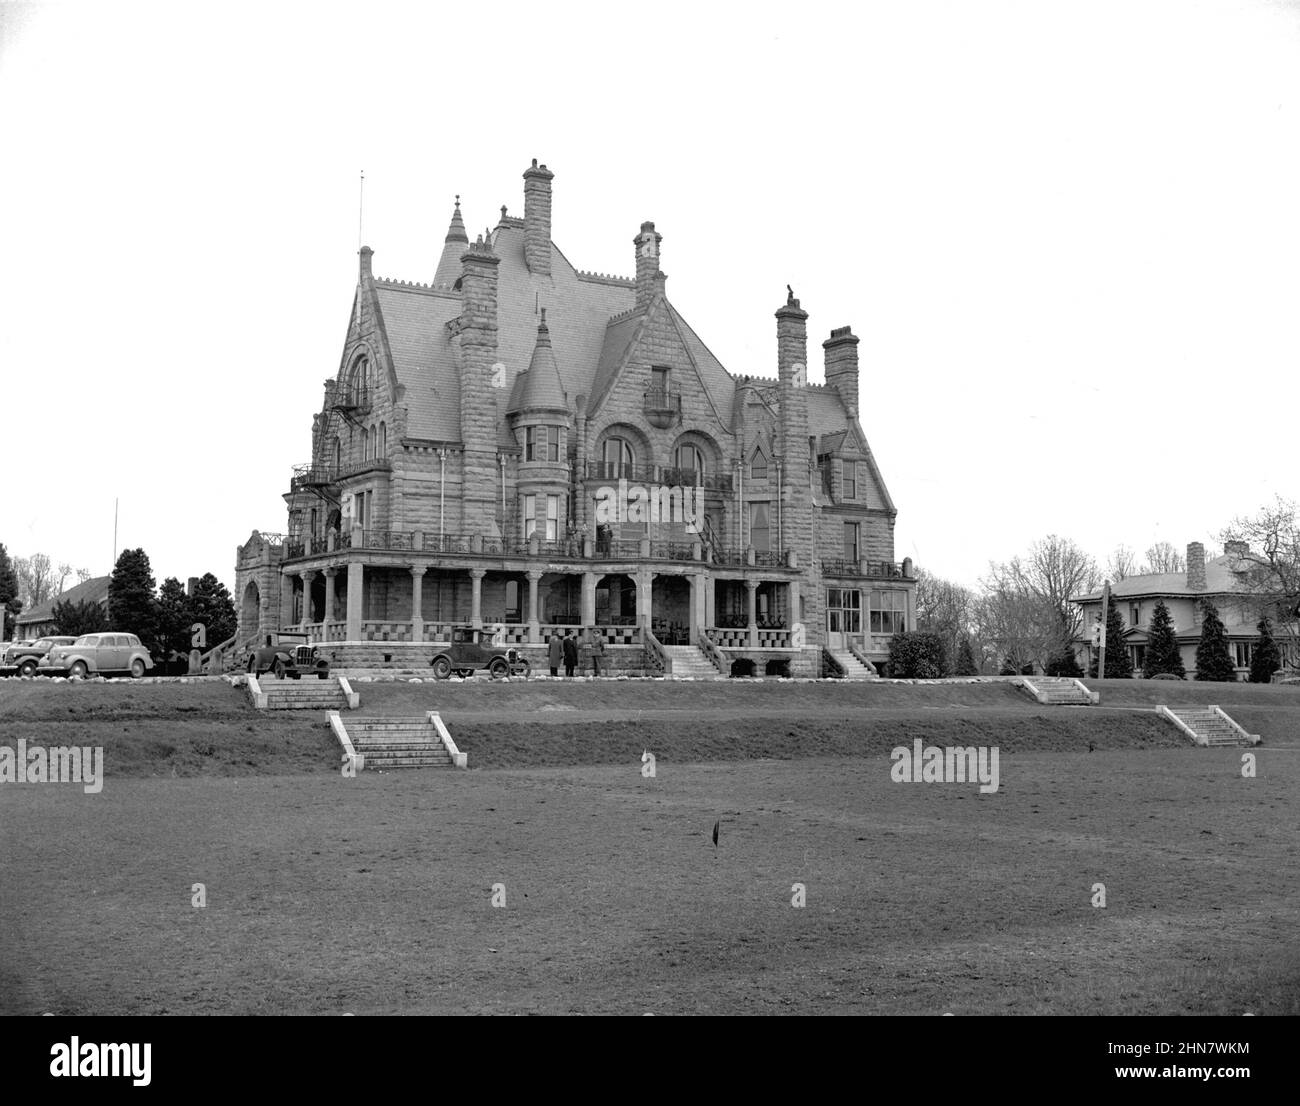 Photographie vintage noir et blanc ca. 1943 du château Craigdarroch de l'époque victorienne, manoir Baronial écossais de Victoria, Colombie-Britannique, Canada Banque D'Images